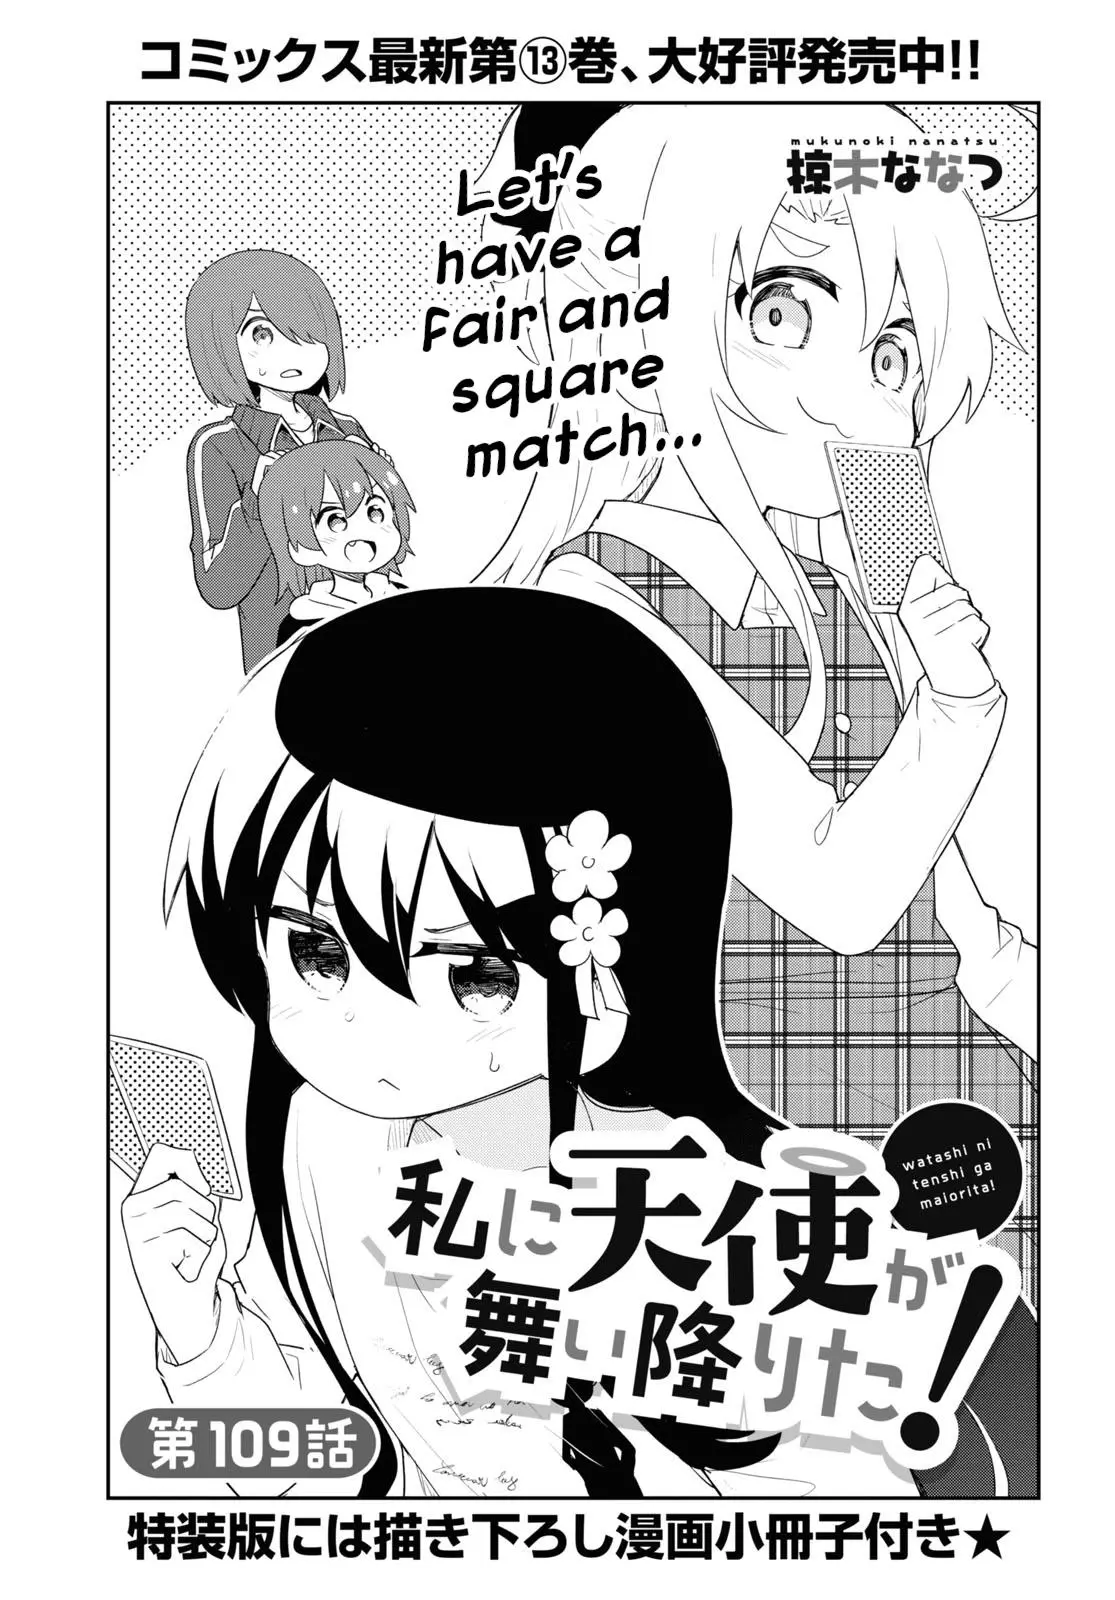 Watashi Ni Tenshi Ga Maiorita! - 109 page 1-329654ed